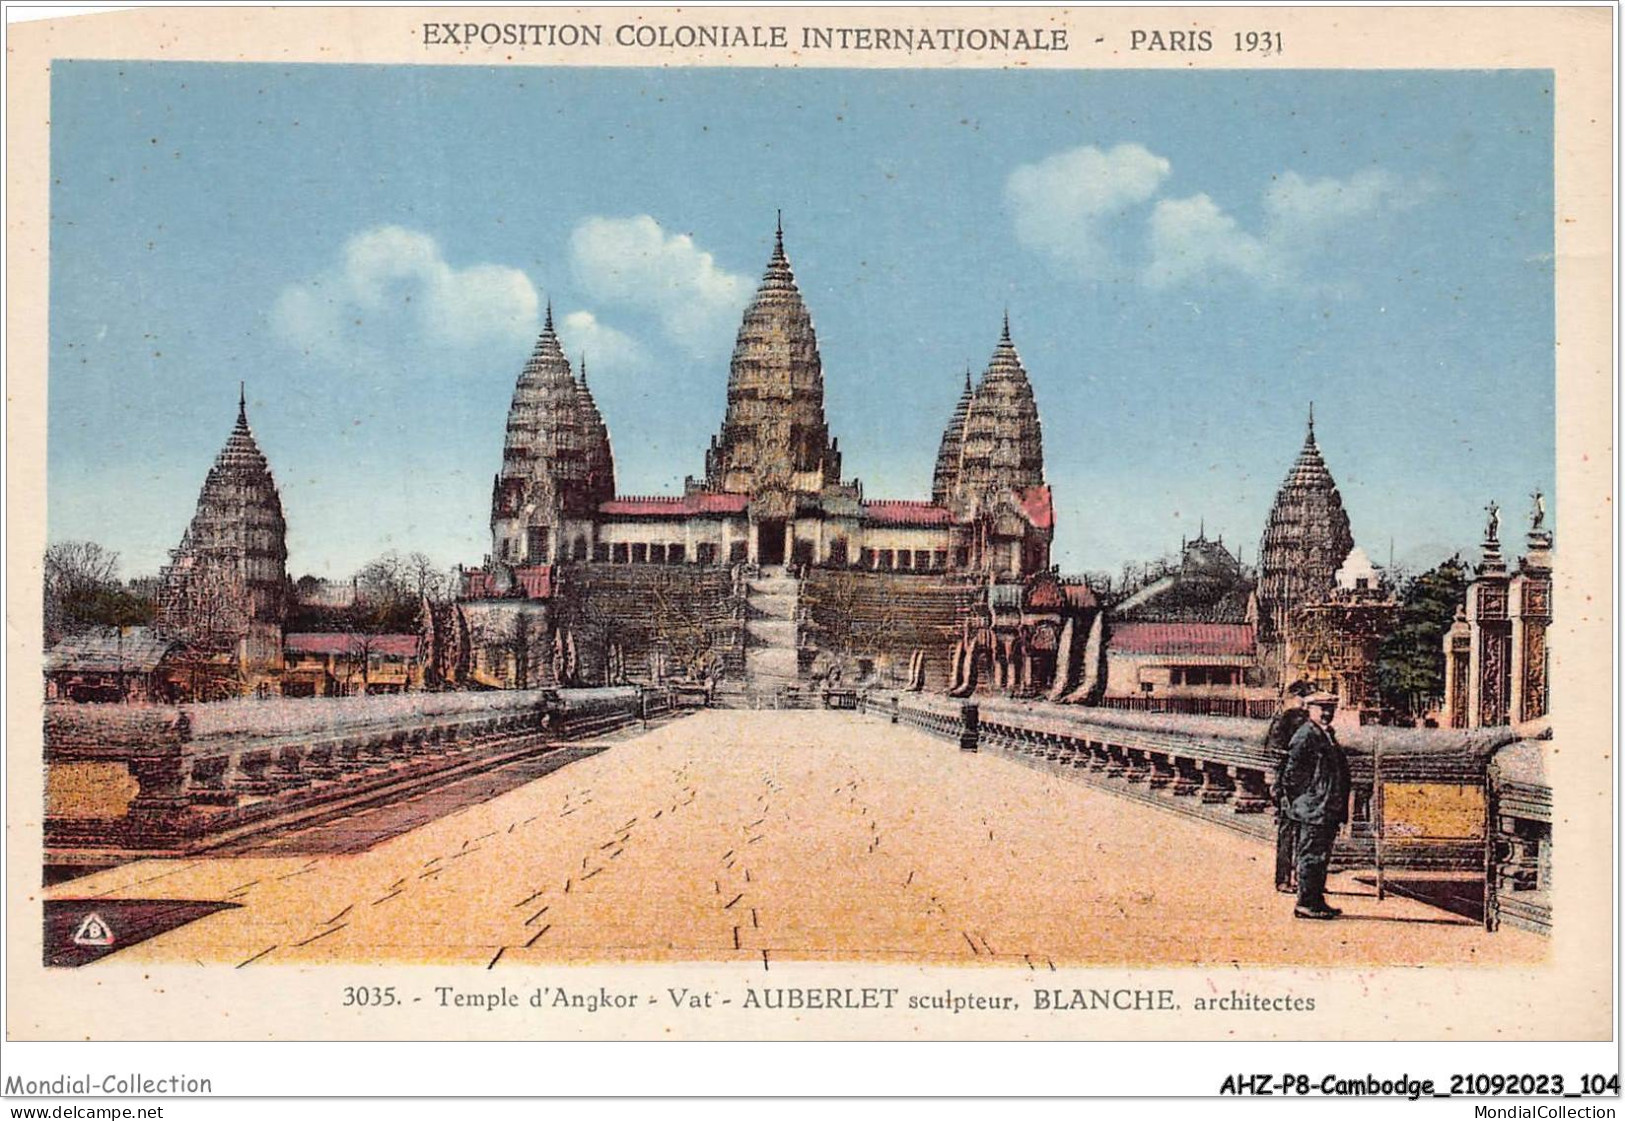 AHZP8-CAMBODGE-0735 - EXPOSITION COLONIALE INTERNATIONALE - PARIS 1931 - TEMPLE D'ANGKOR-VAT - AUBERLET SCULPTEURS - Cambodge